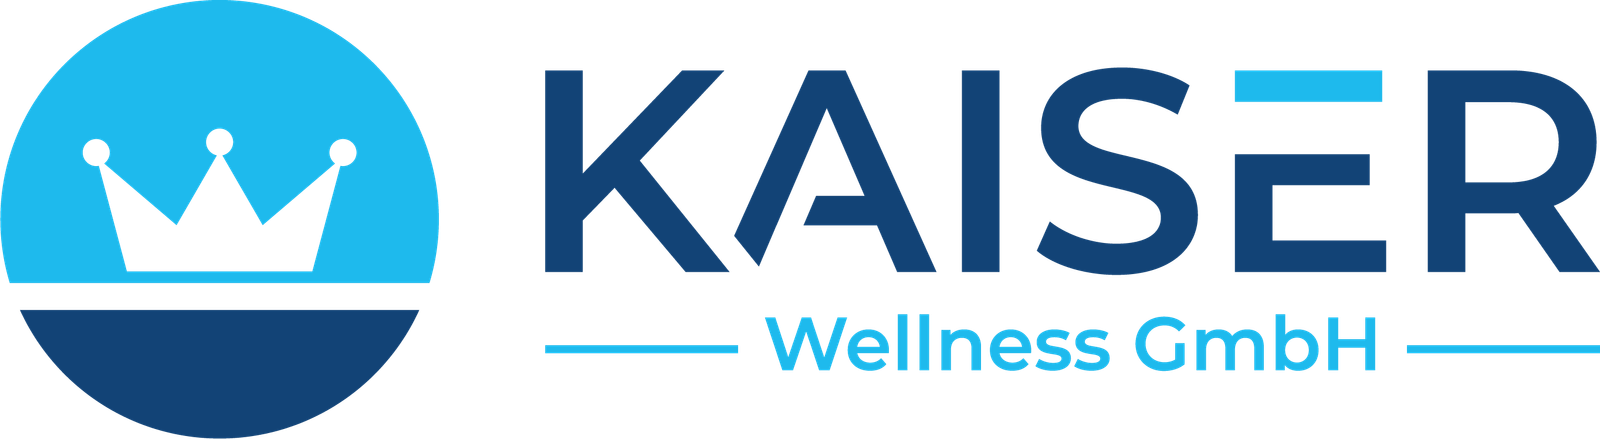 KAISER Wellness GmbH